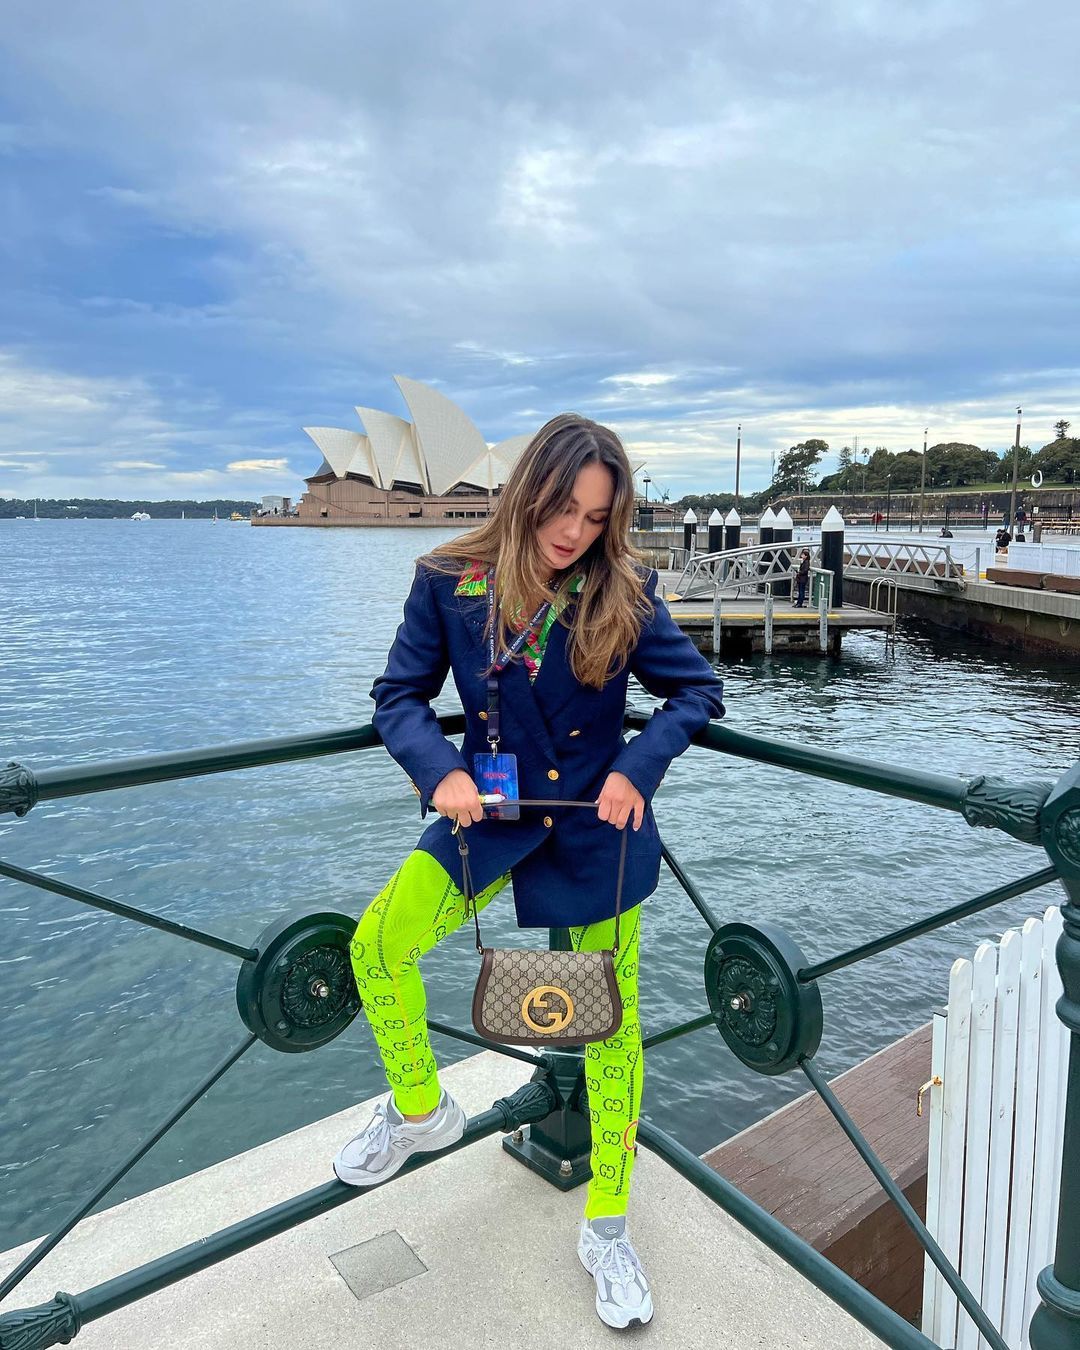 Jalan-jalan ke Australia, Luna Maya Pakai Outfit Ratusan Juta Rupiah